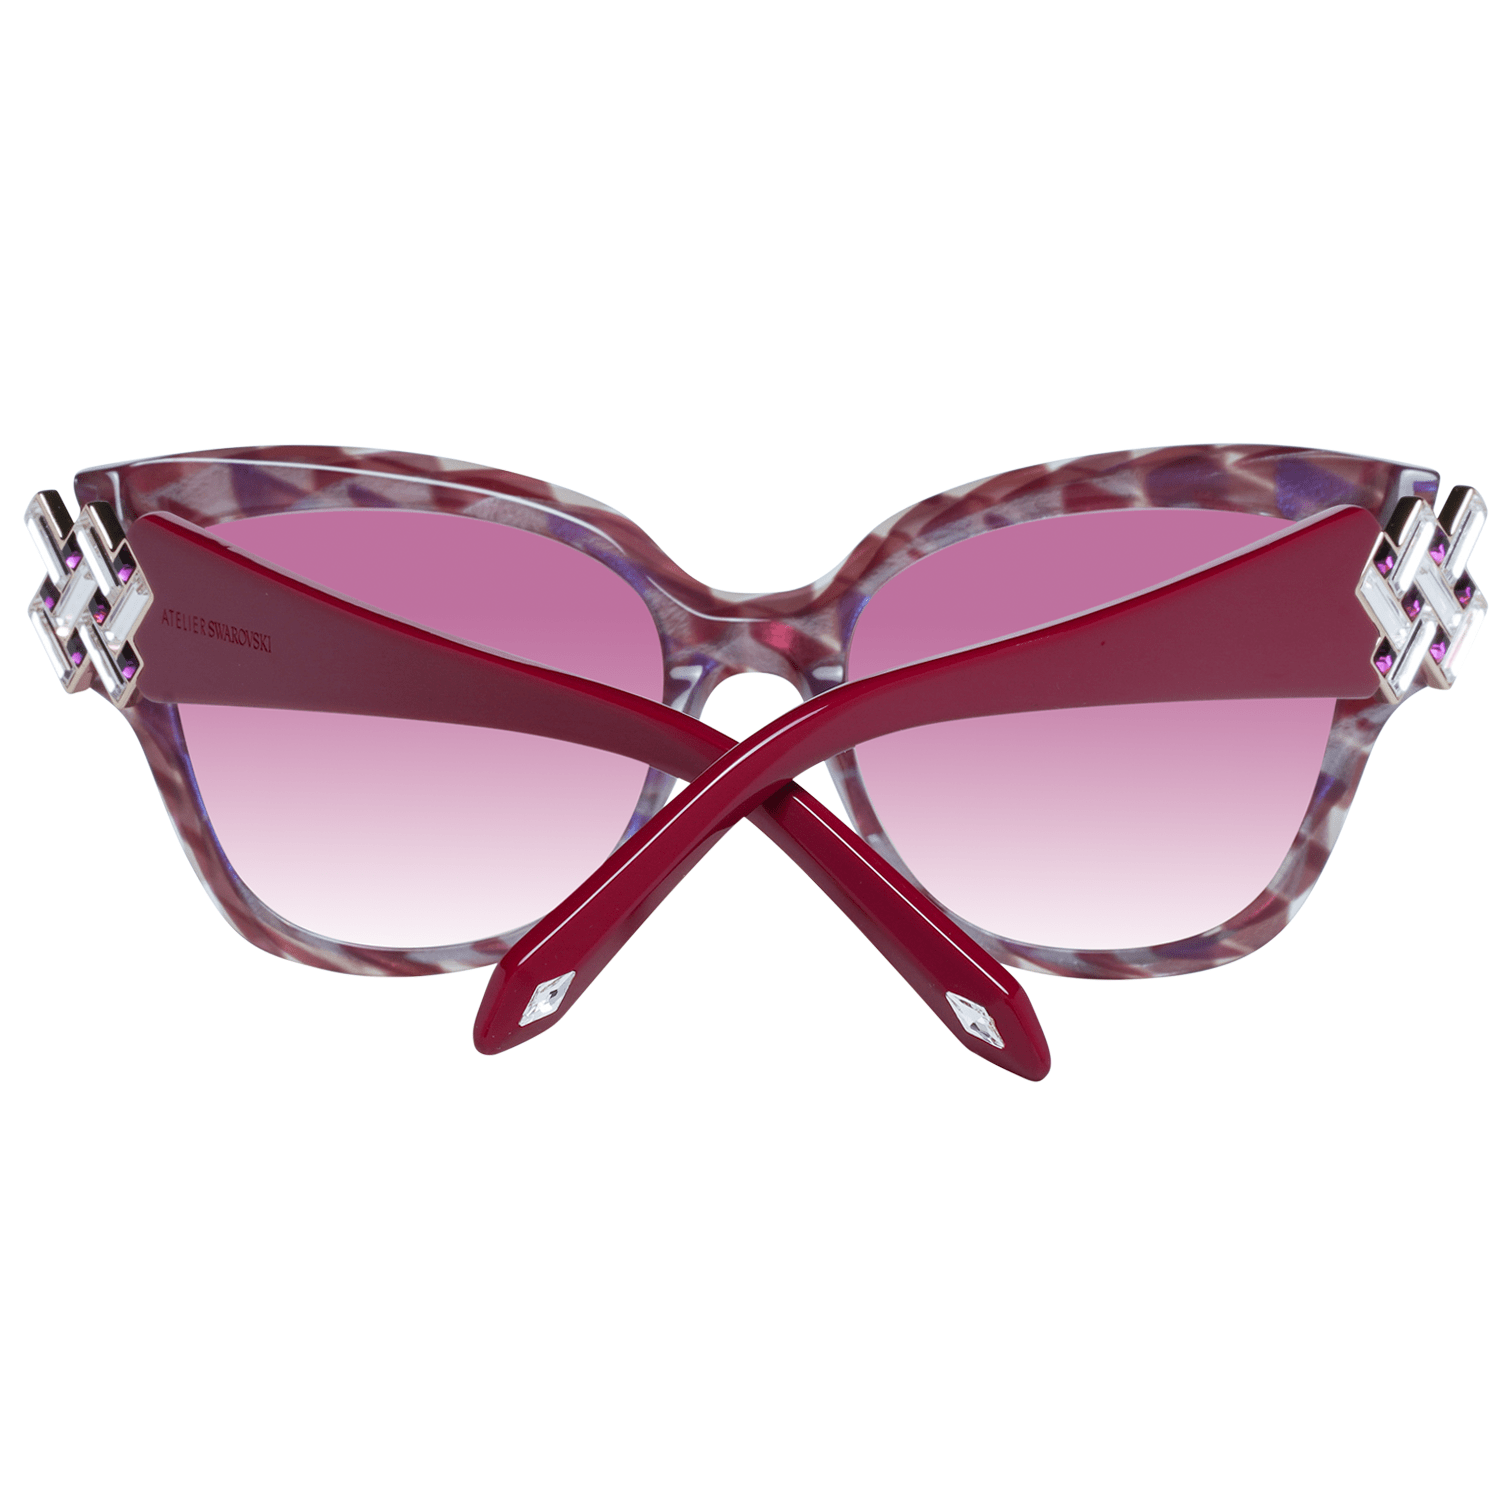 Atelier Swarovski Purple Women Sunglasses - DEA STILOSA MILANO